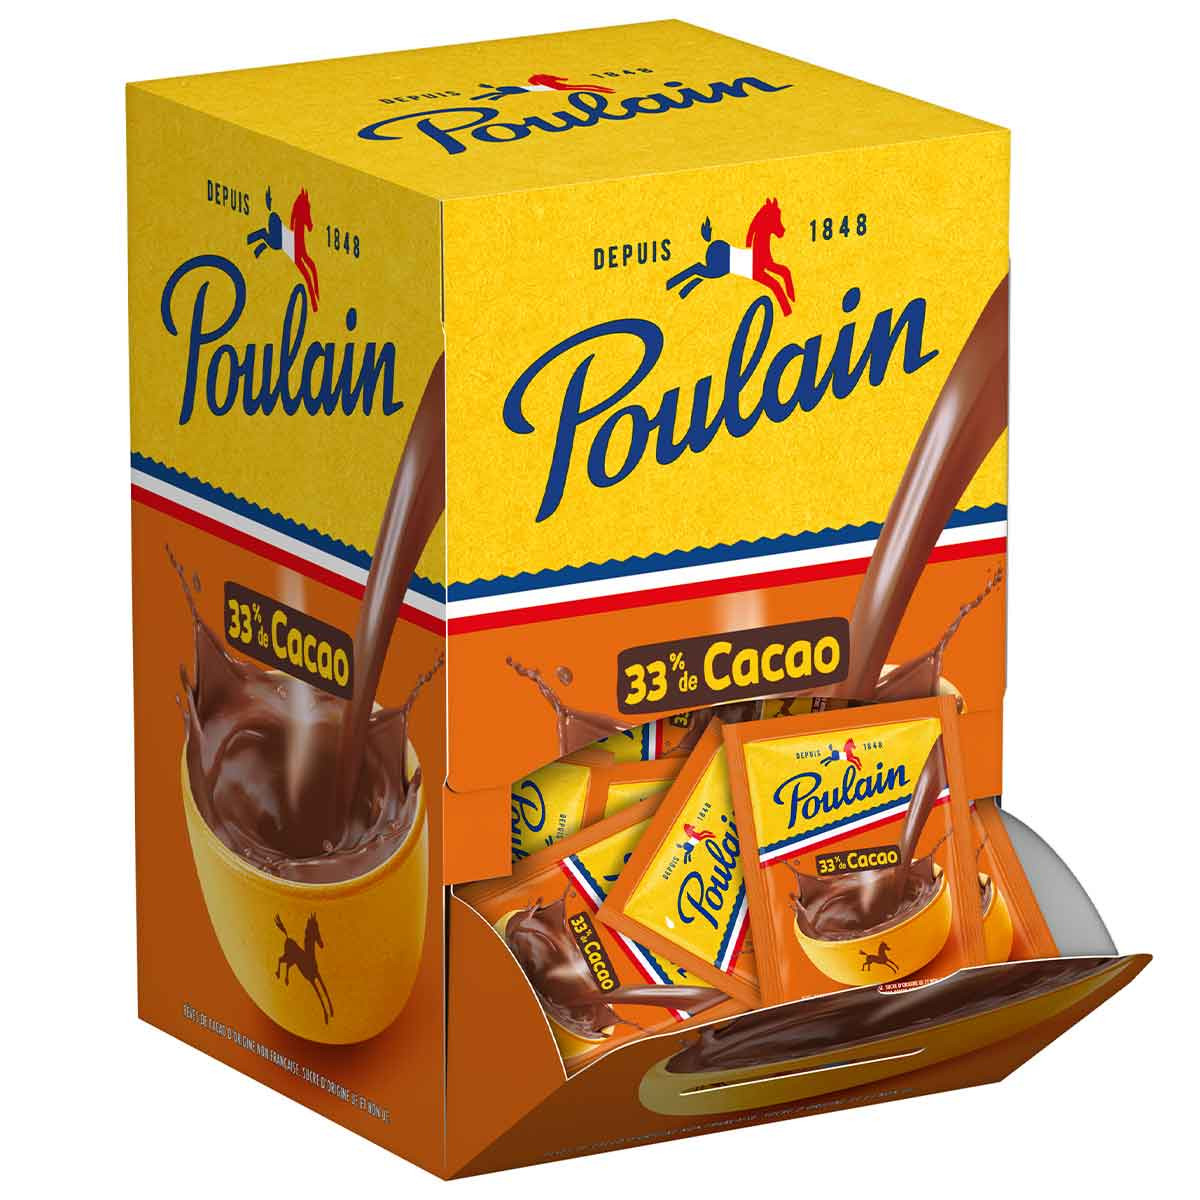 Chocolat Poulain Au Bon Lait - Chocolat Poulain